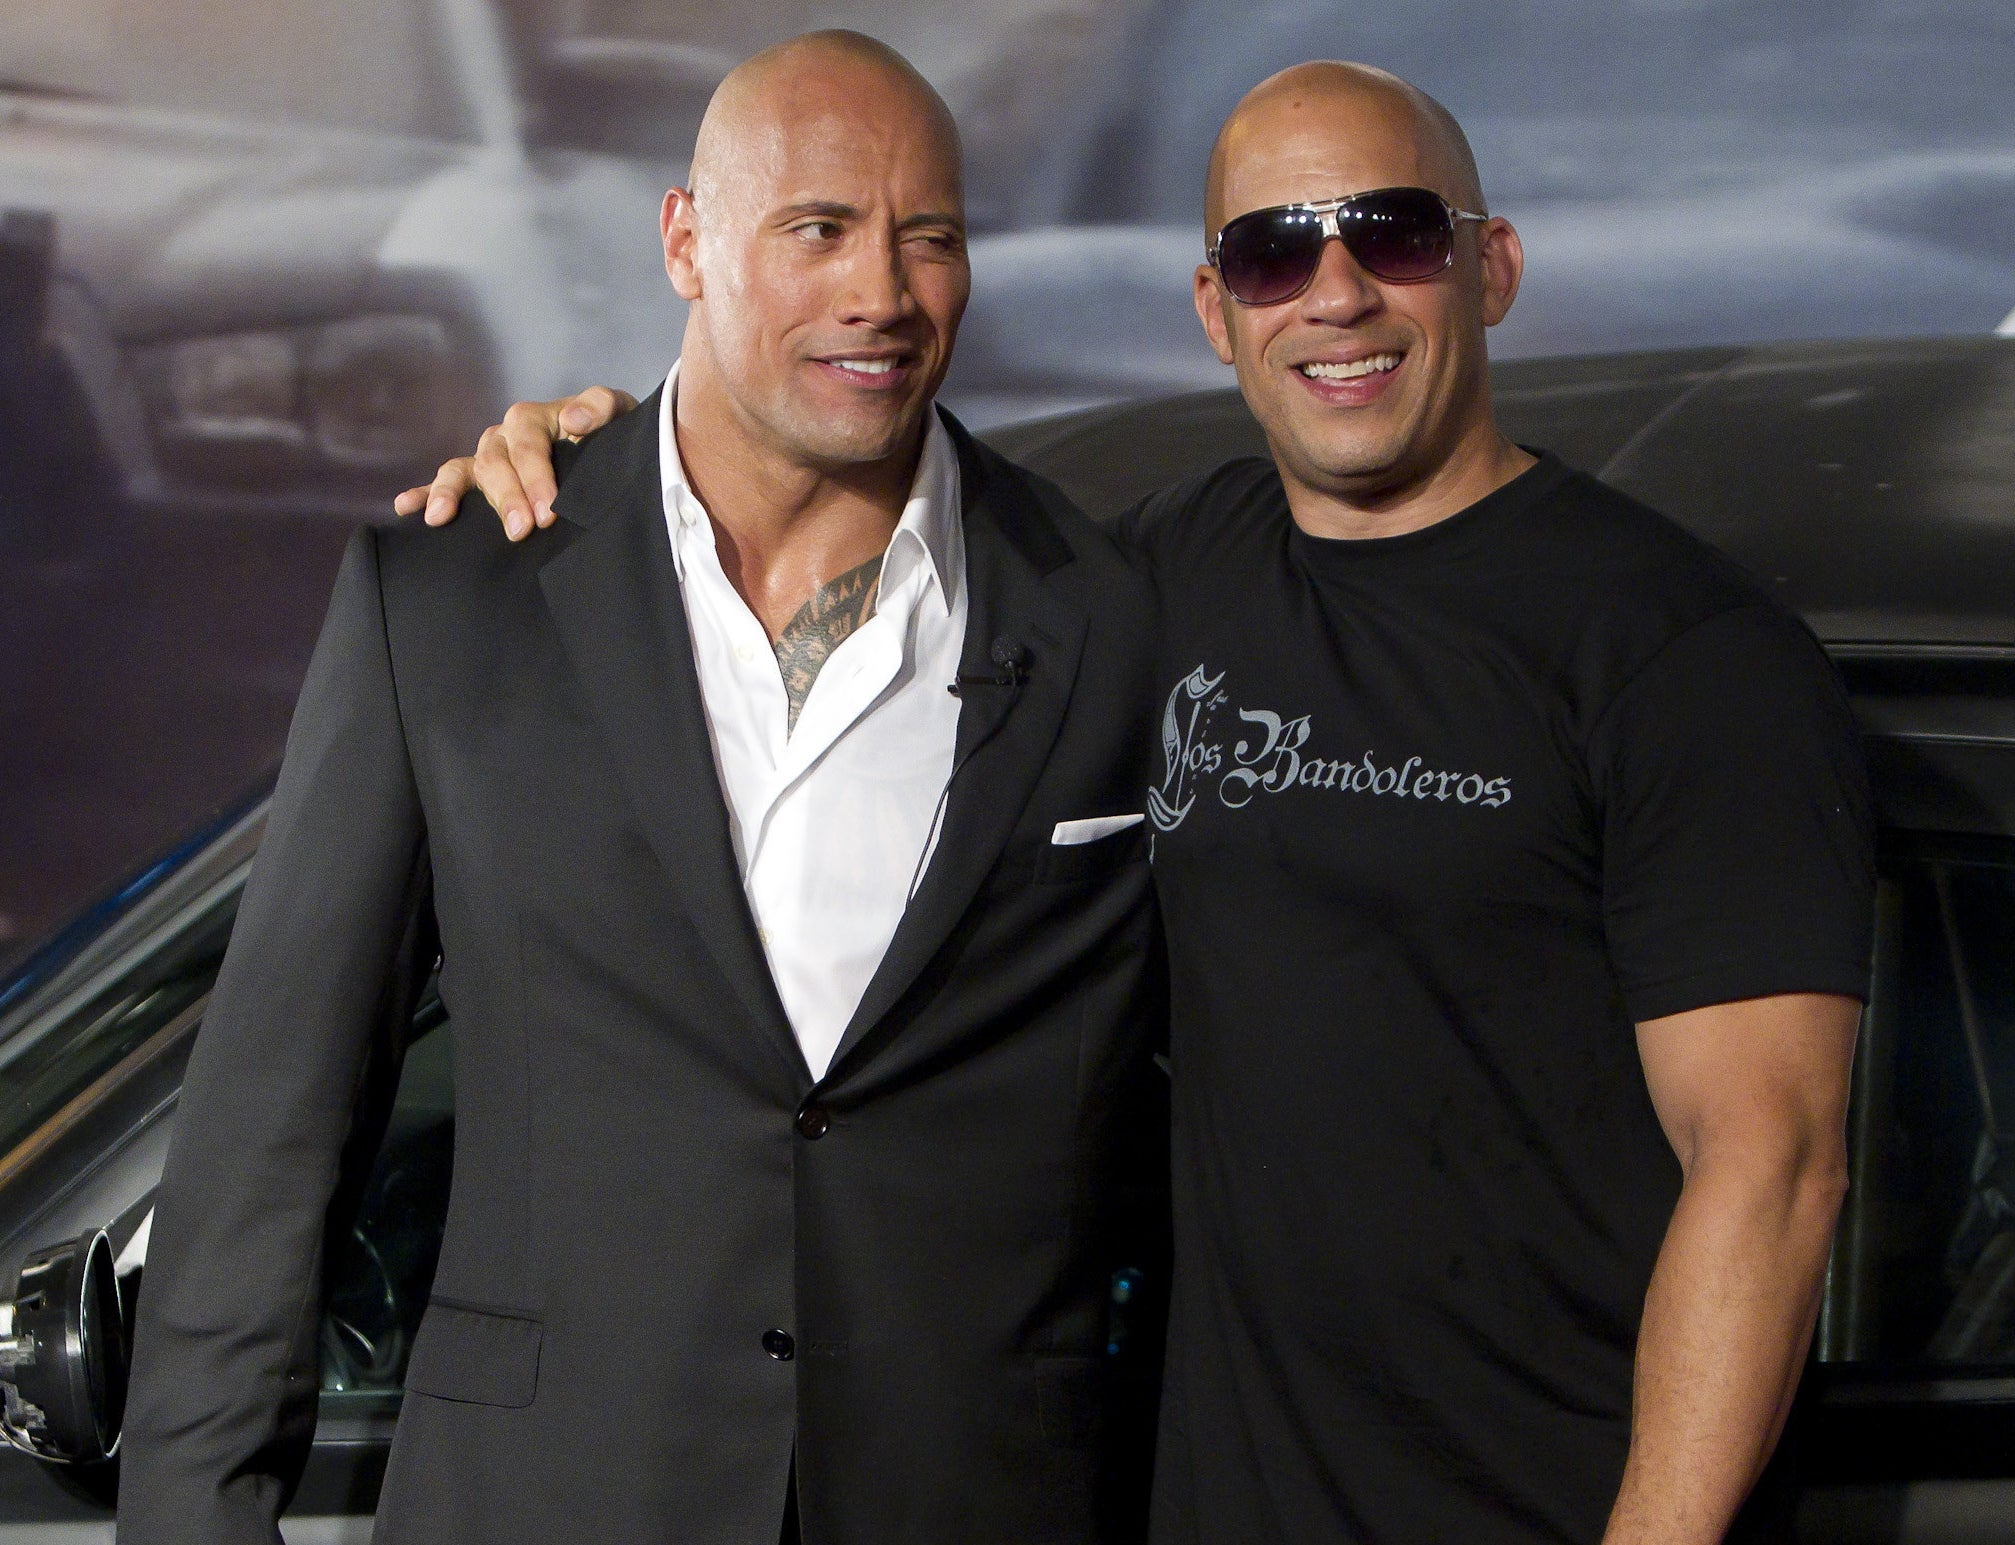 Vin Diesel puts his arm around Dwayne